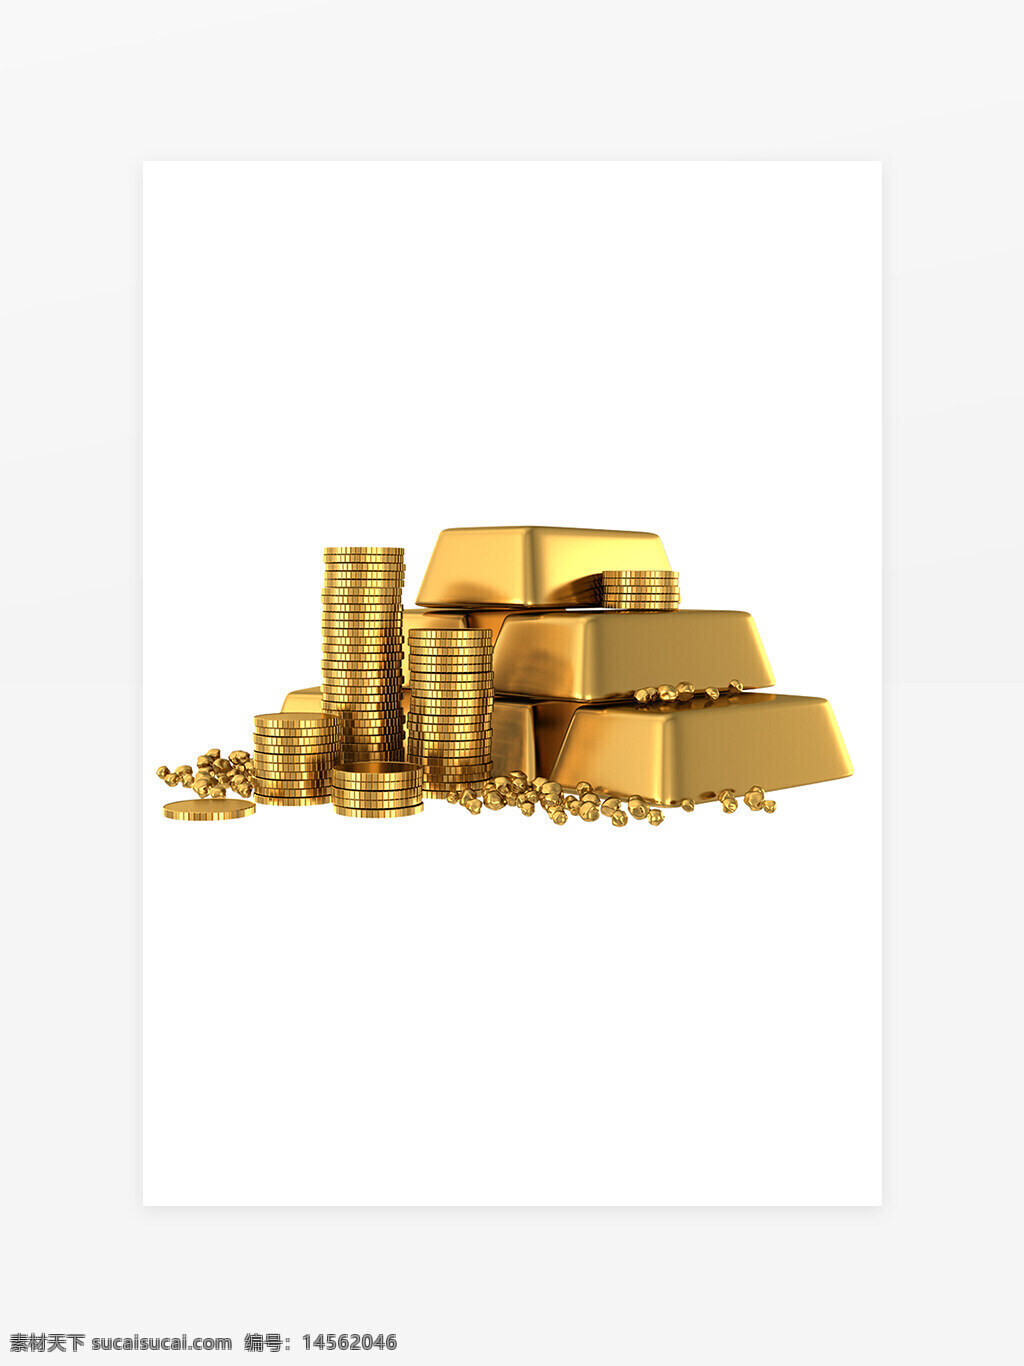 金砖 金块 金币 黄金 金融元素